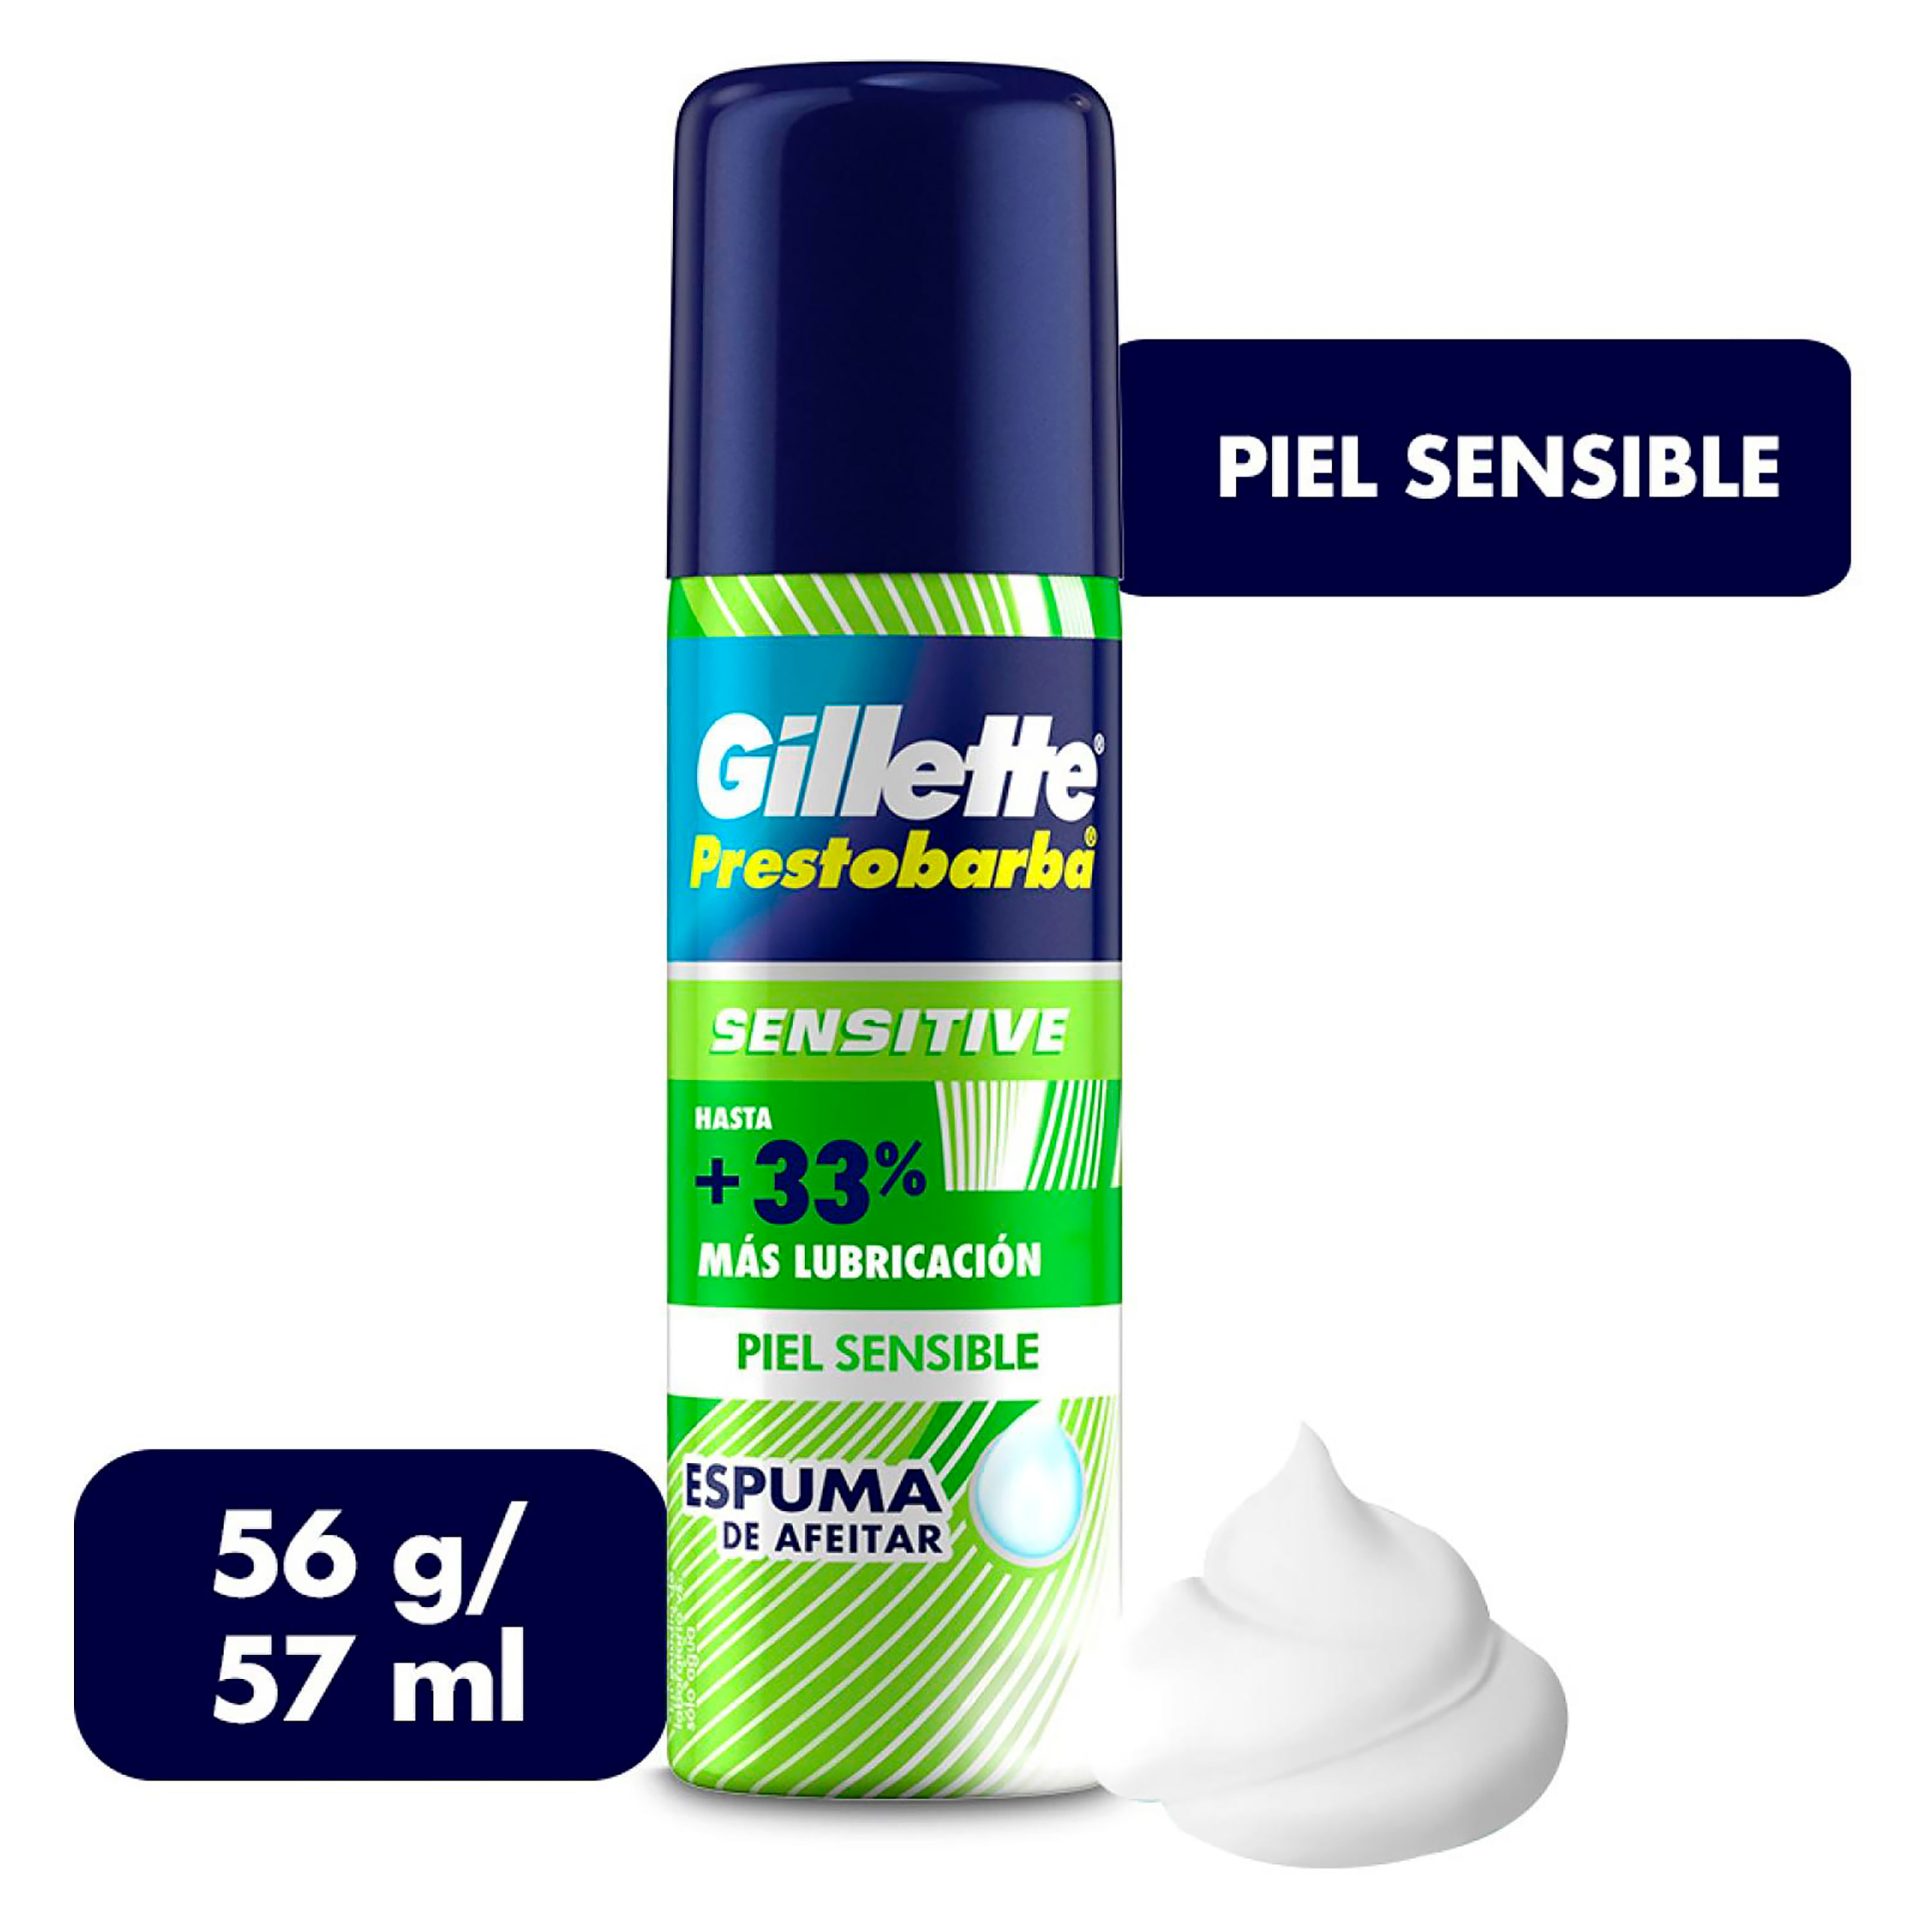 GILLETTE Sensitive, Espuma para Afeitar Piel Sensible de 57mL, para Rasurar  la Barba con Rastrillo para Hombre, Protege la Piel, Reduce la Irritación